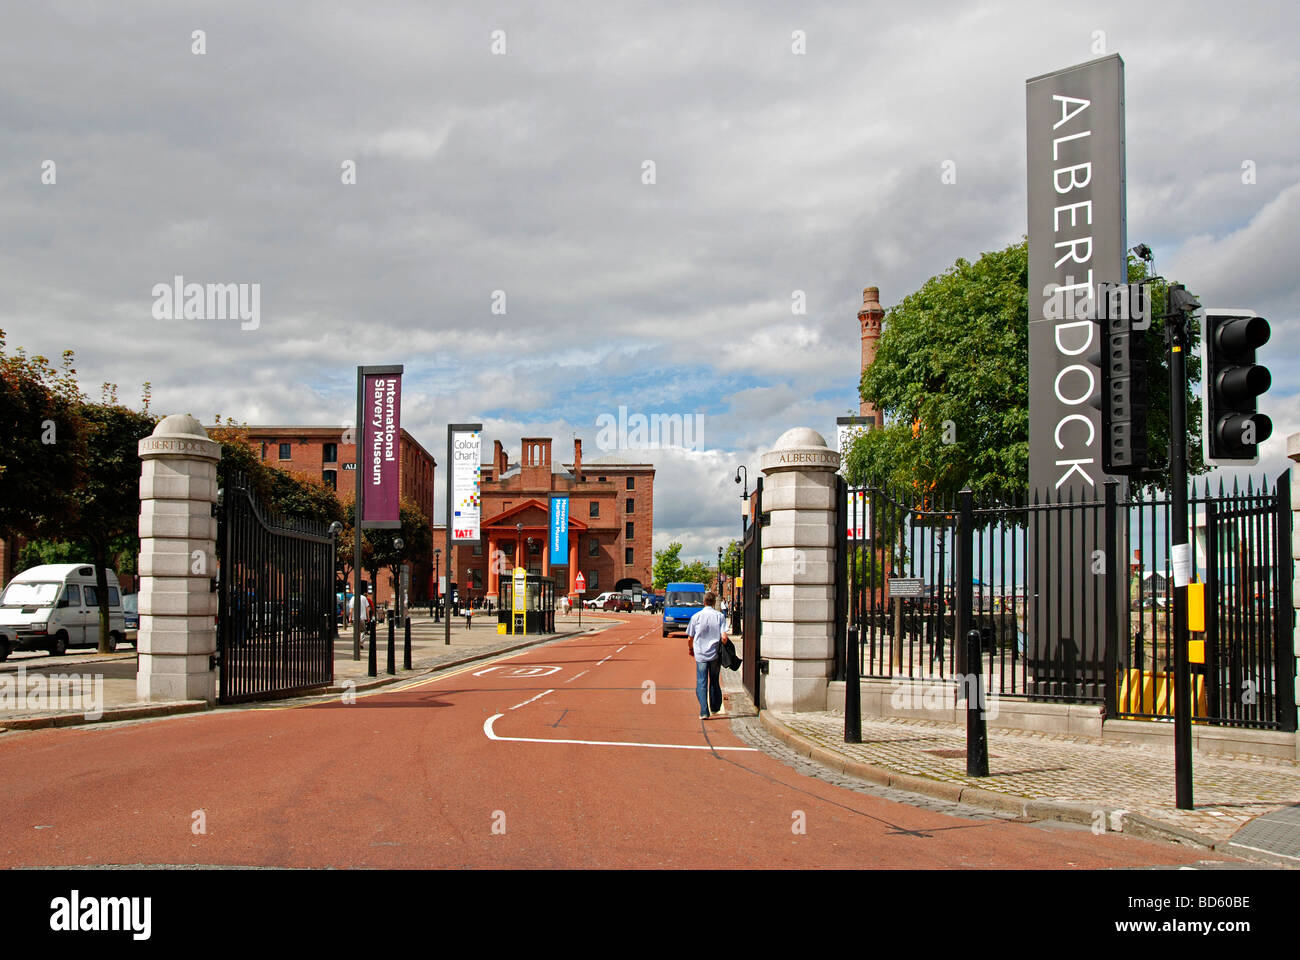 L'entrée de 'Albert Dock' dans Liverpool, Angleterre, Royaume-Uni Banque D'Images